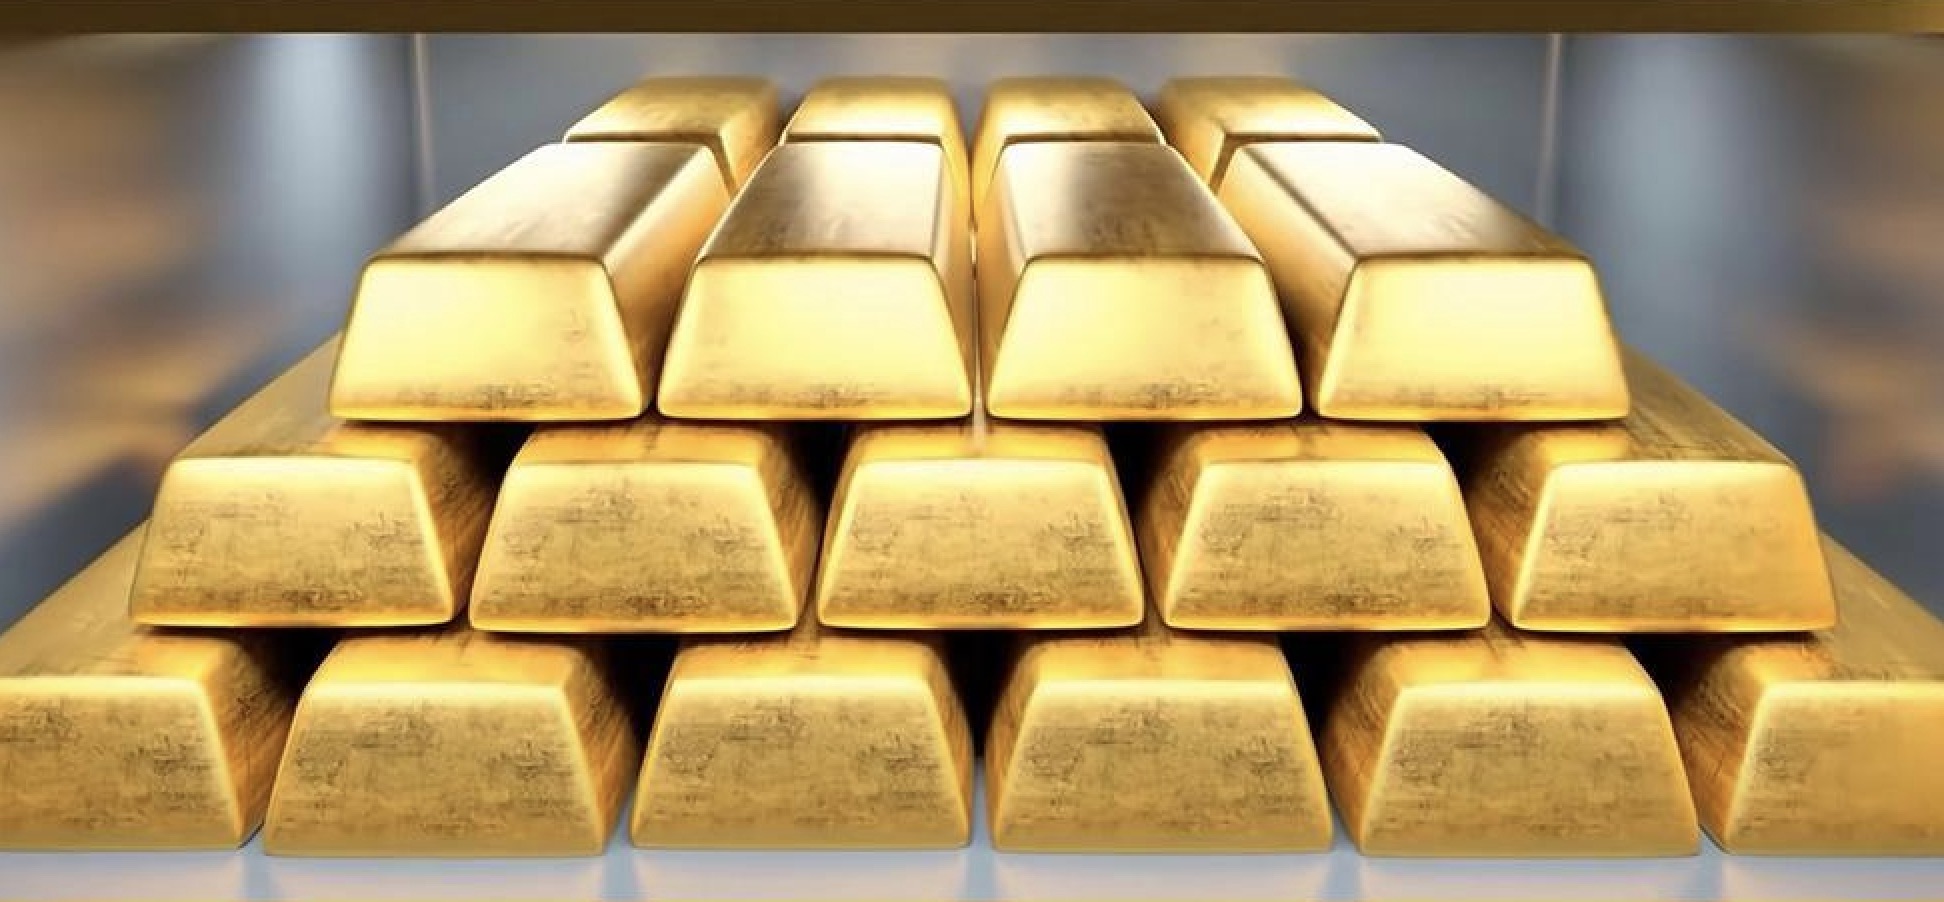 การแจ้งเตือนการซื้อขายทองคำ: ข้อมูล PCE แสดงให้เห็นว่าอัตราเงินเฟ้อของสหรัฐฯ ชะลอตัวในเดือนกุมภาพันธ์ และราคาทองคำเปิดสูงขึ้นมากกว่า 10 ดอลลาร์ ซึ่งถือเป็นระดับสูงสุดใหม่ตลอดกาล